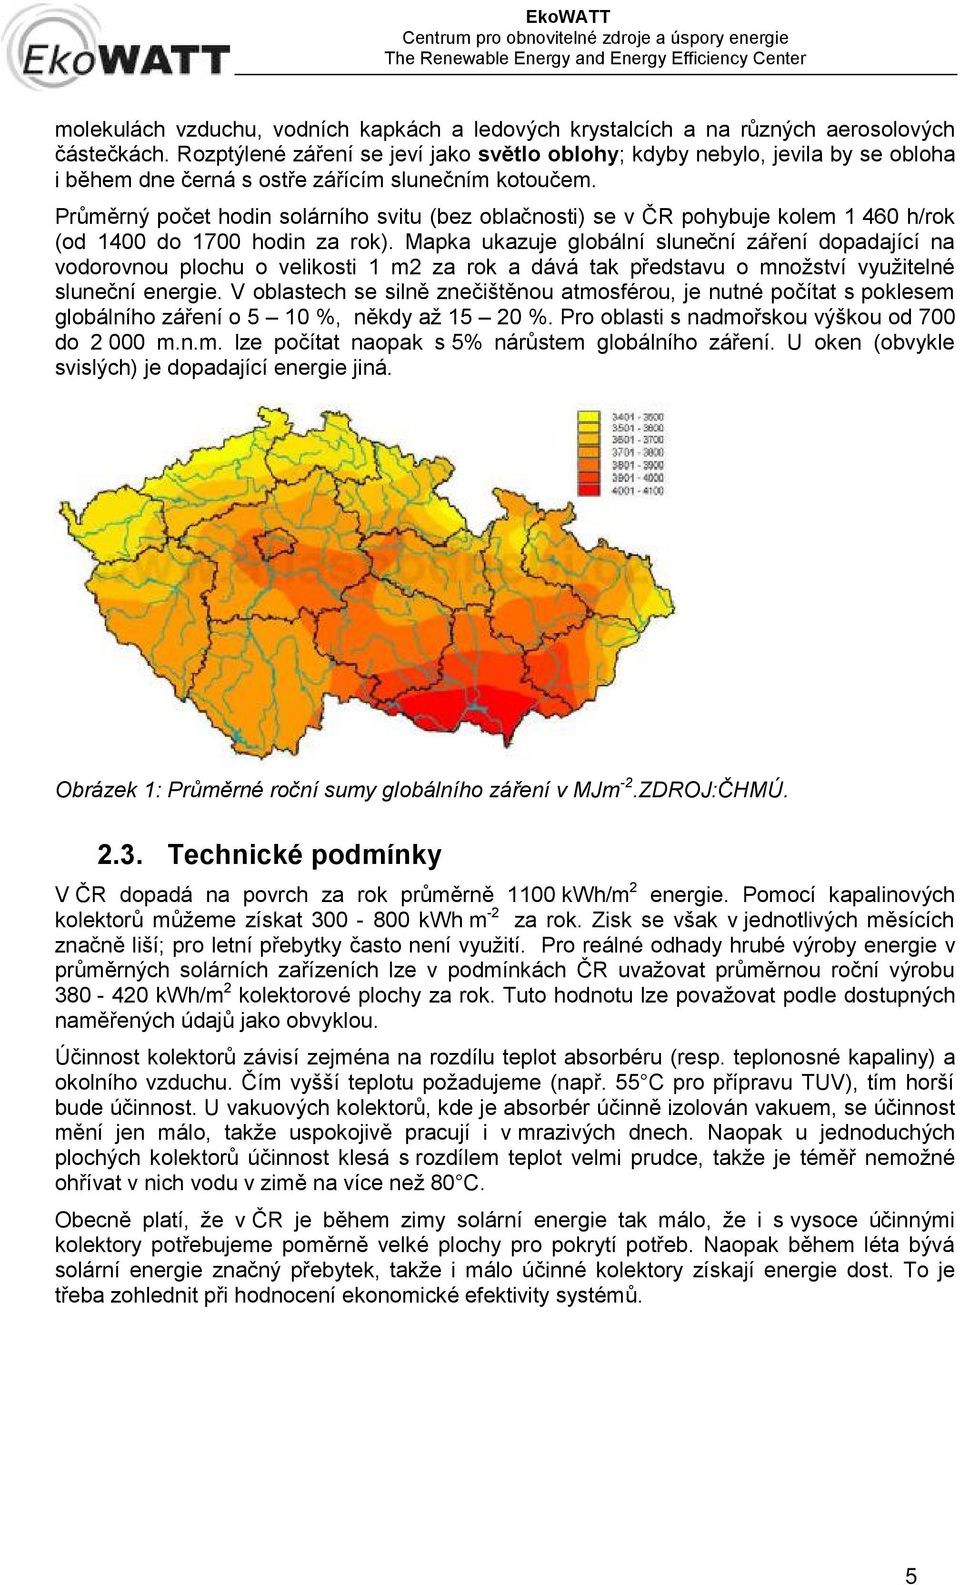 Průměrný počet hodin solárního svitu (bez oblačnosti) se v ČR pohybuje kolem 1 460 h/rok (od 1400 do 1700 hodin za rok).